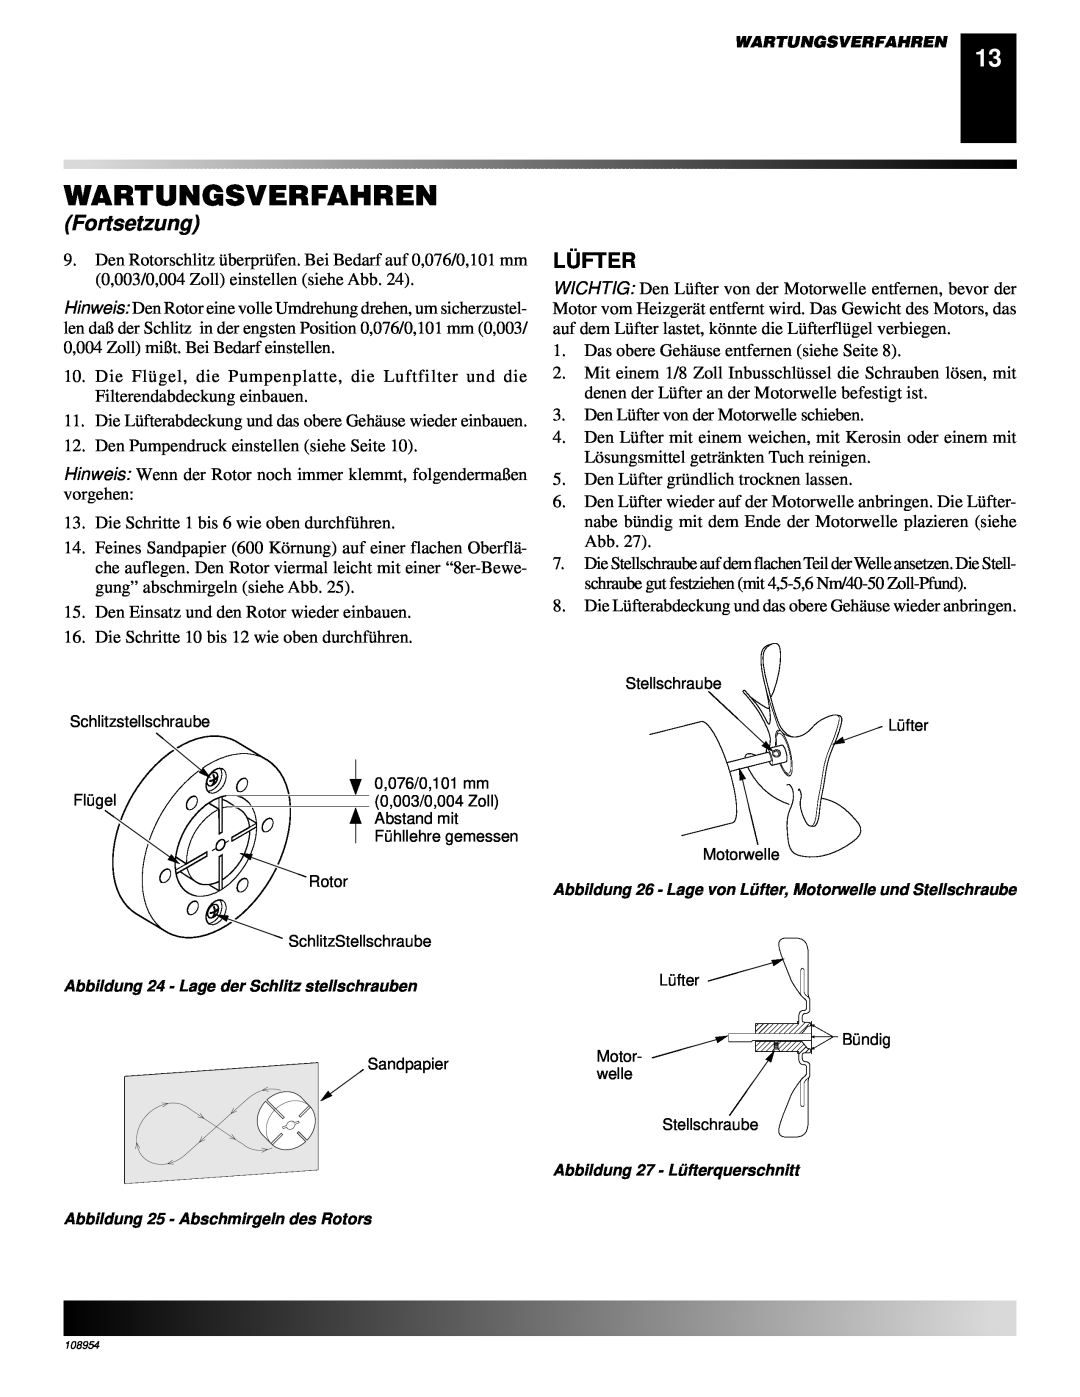 Desa GK30, GK20 owner manual Lü Fter, Wartungsverfahren, Fortsetzung 